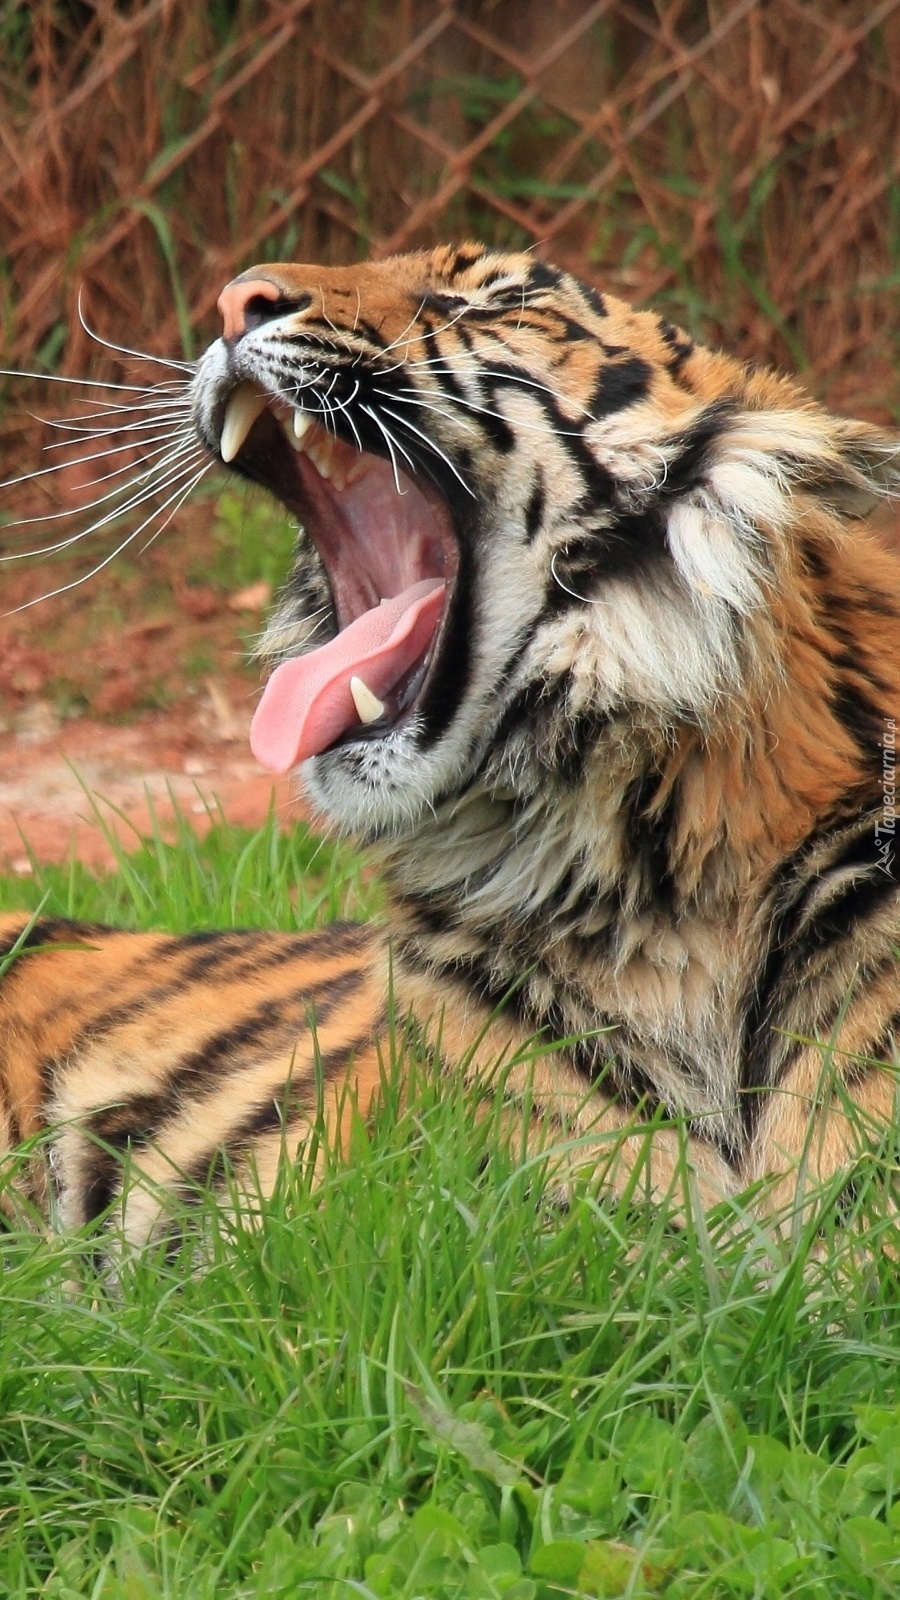 Ziewający tygrys w trawie